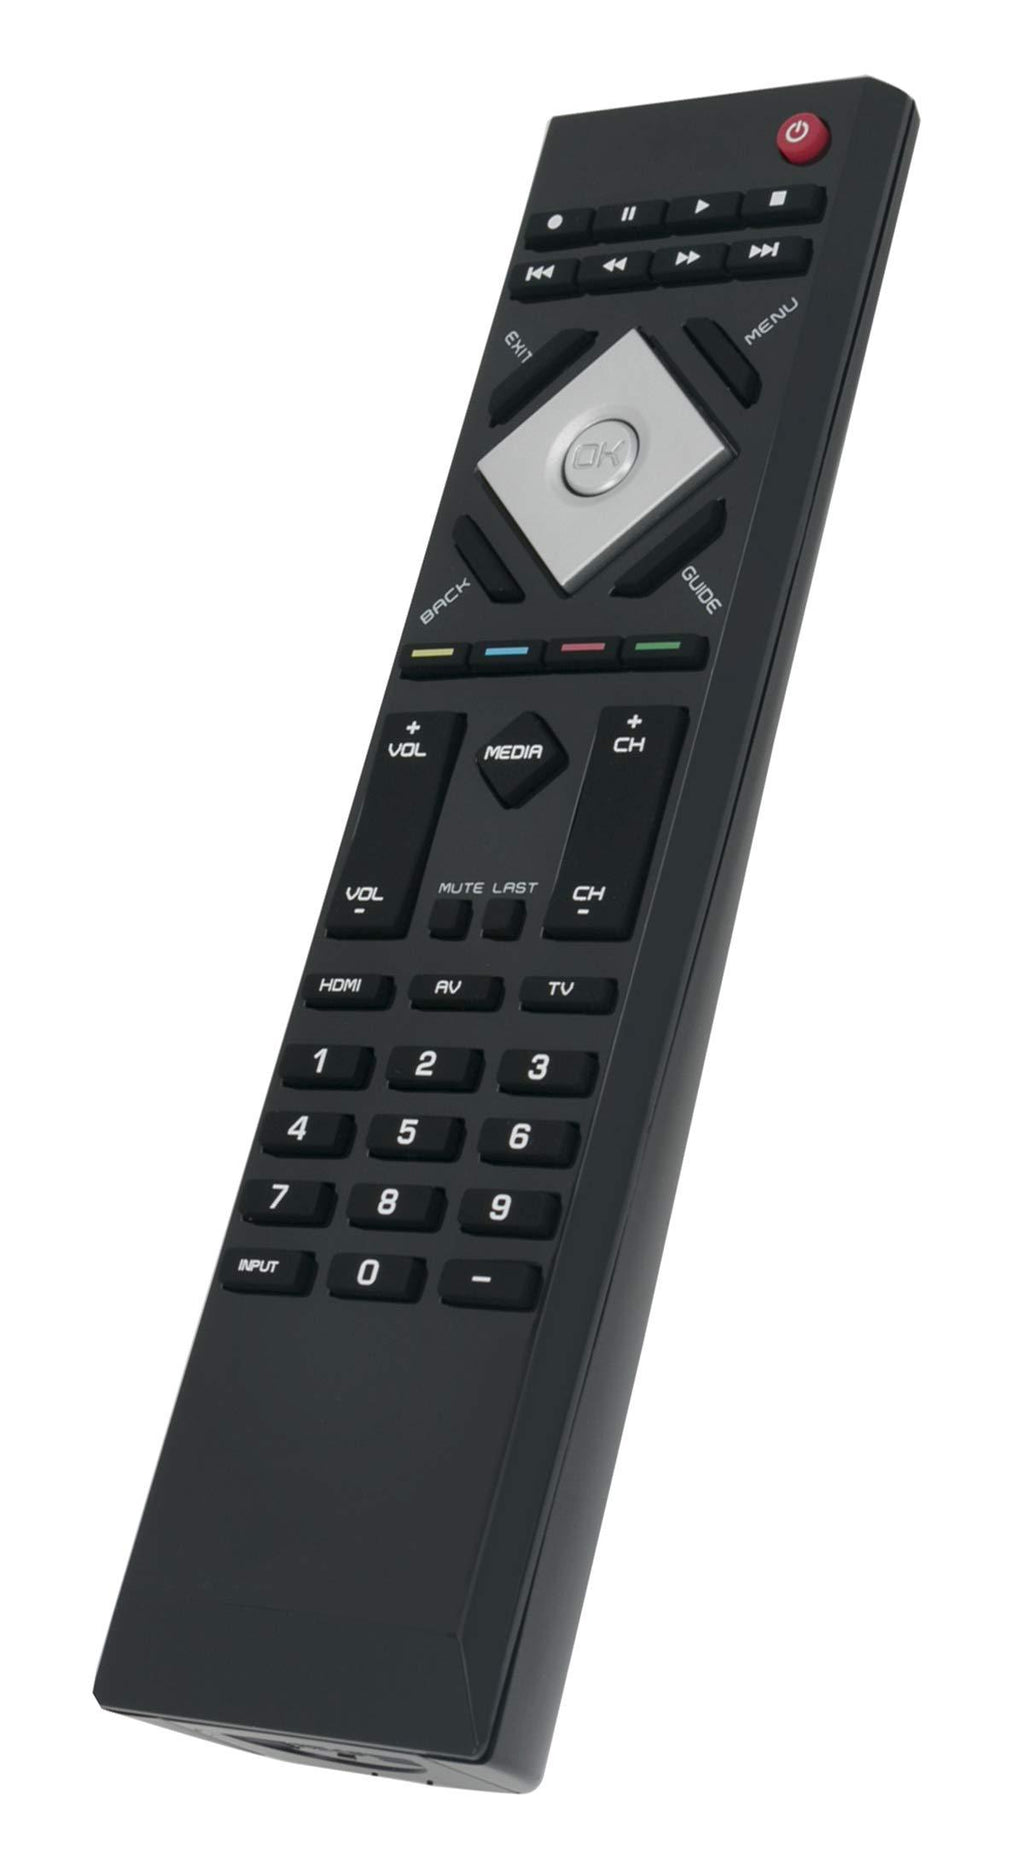 New VR15 Remote Control Compatible with VIZIO TV 0980-0306-0302 E421VL E551VL E420VL E470VL E550VL E470VLE E421VO E420VO E370VL E421VL E551VL E420VL E470VL E550VL E470VLE E421VO E321VL E371VL E320VP